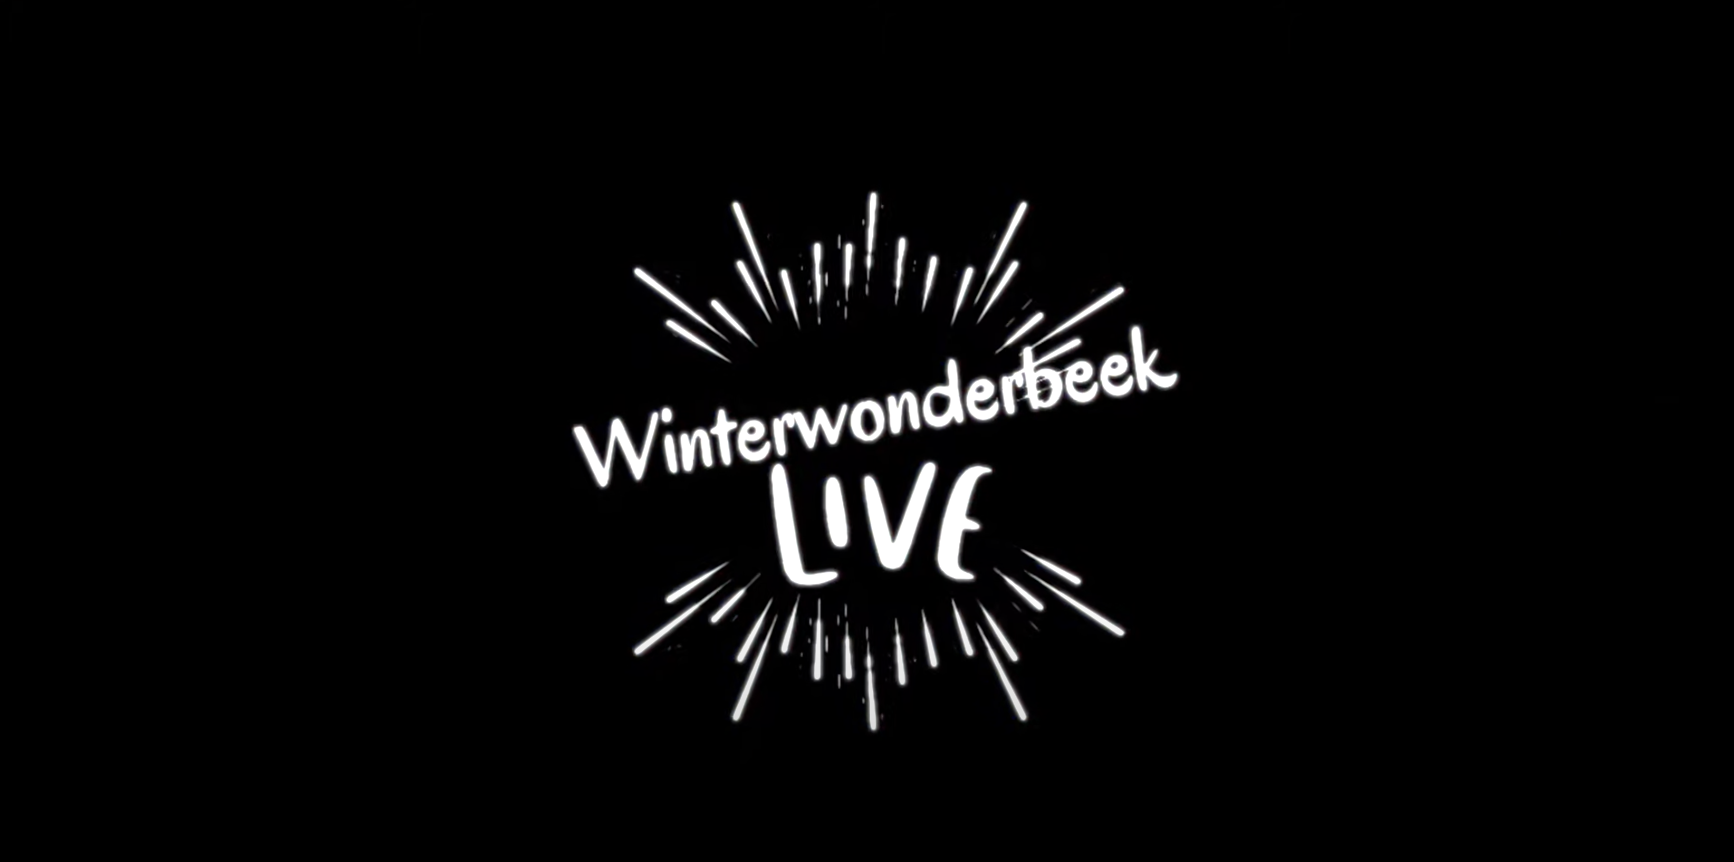 WinterWonderBeek Live 2022